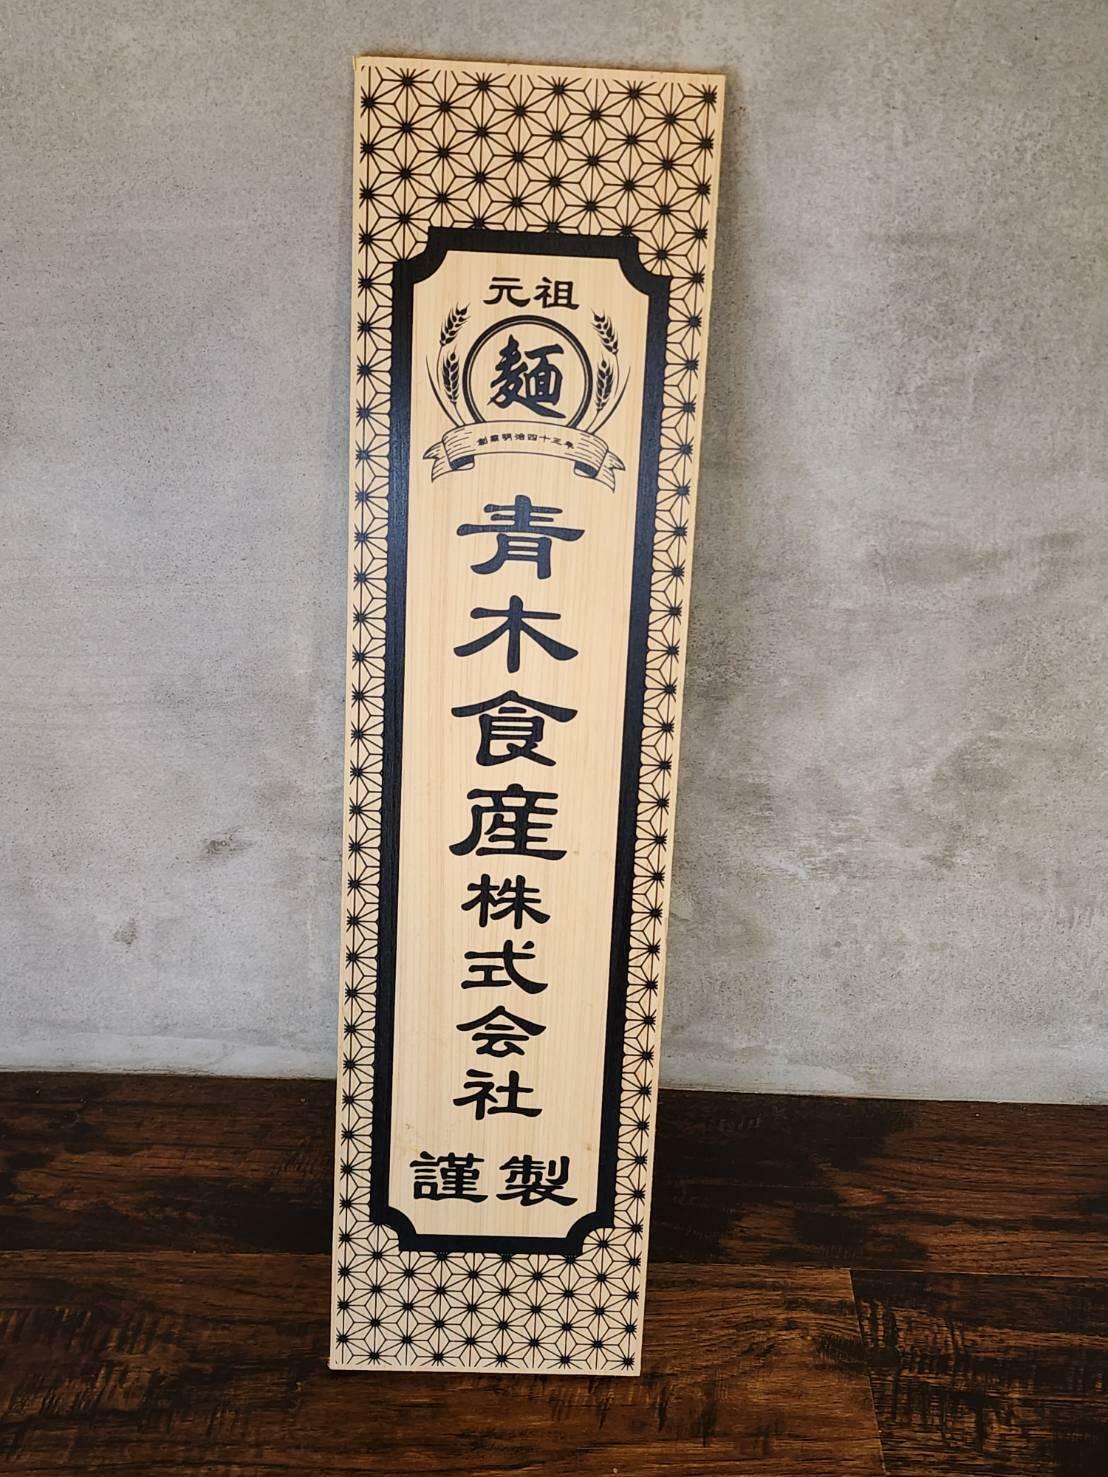 福岡の名製麺所「青木食産」の木札が飾られている